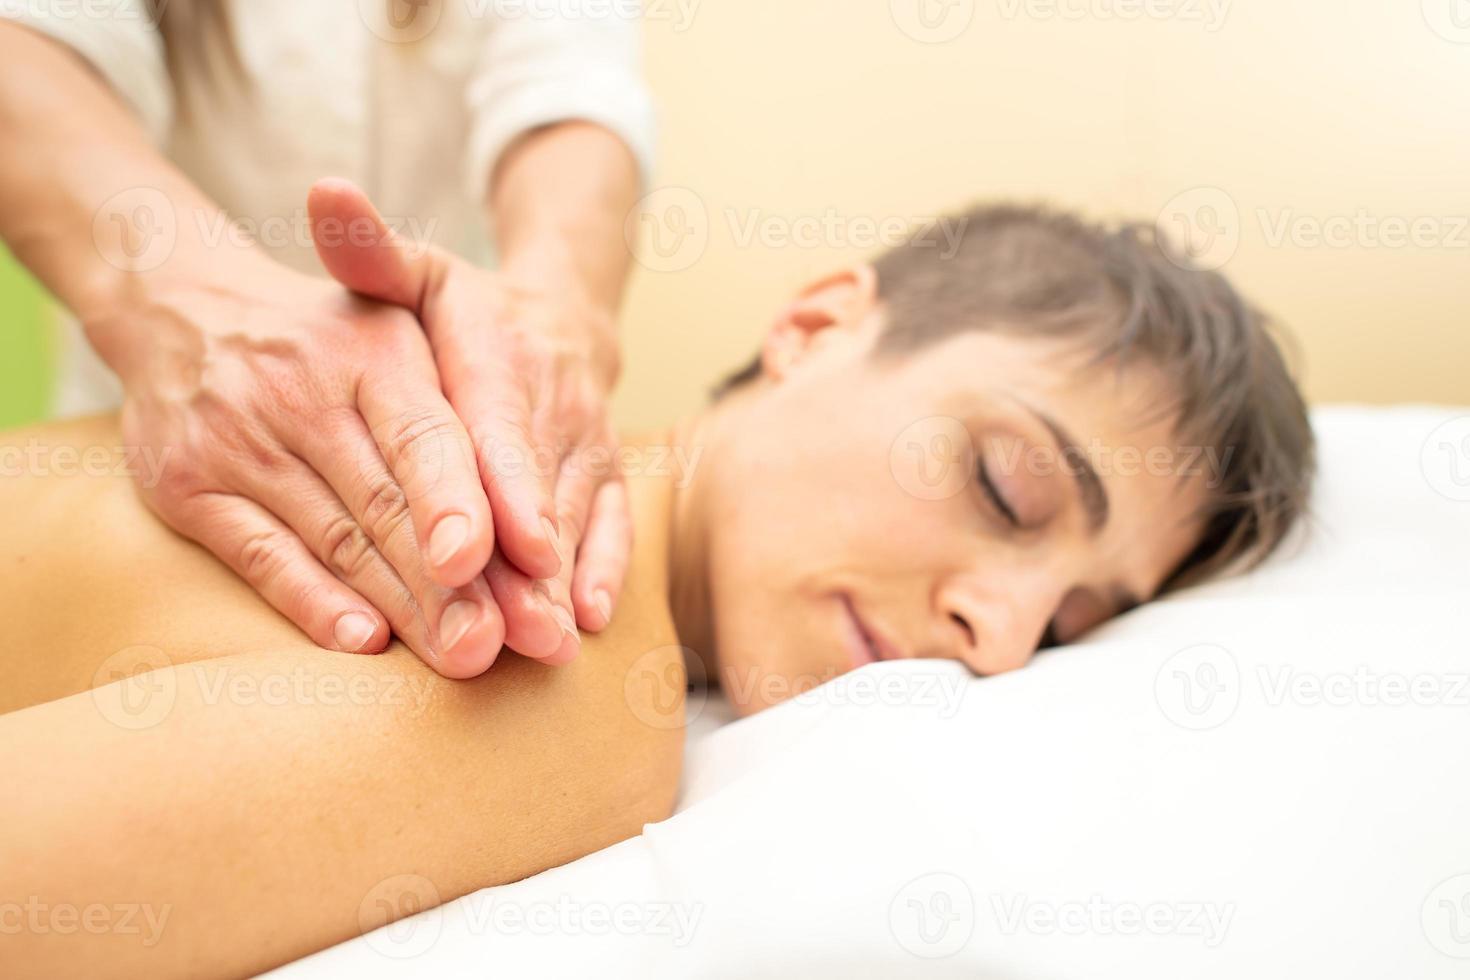 esteticista pratica uma relaxante massagem estética atrás de uma jovem foto